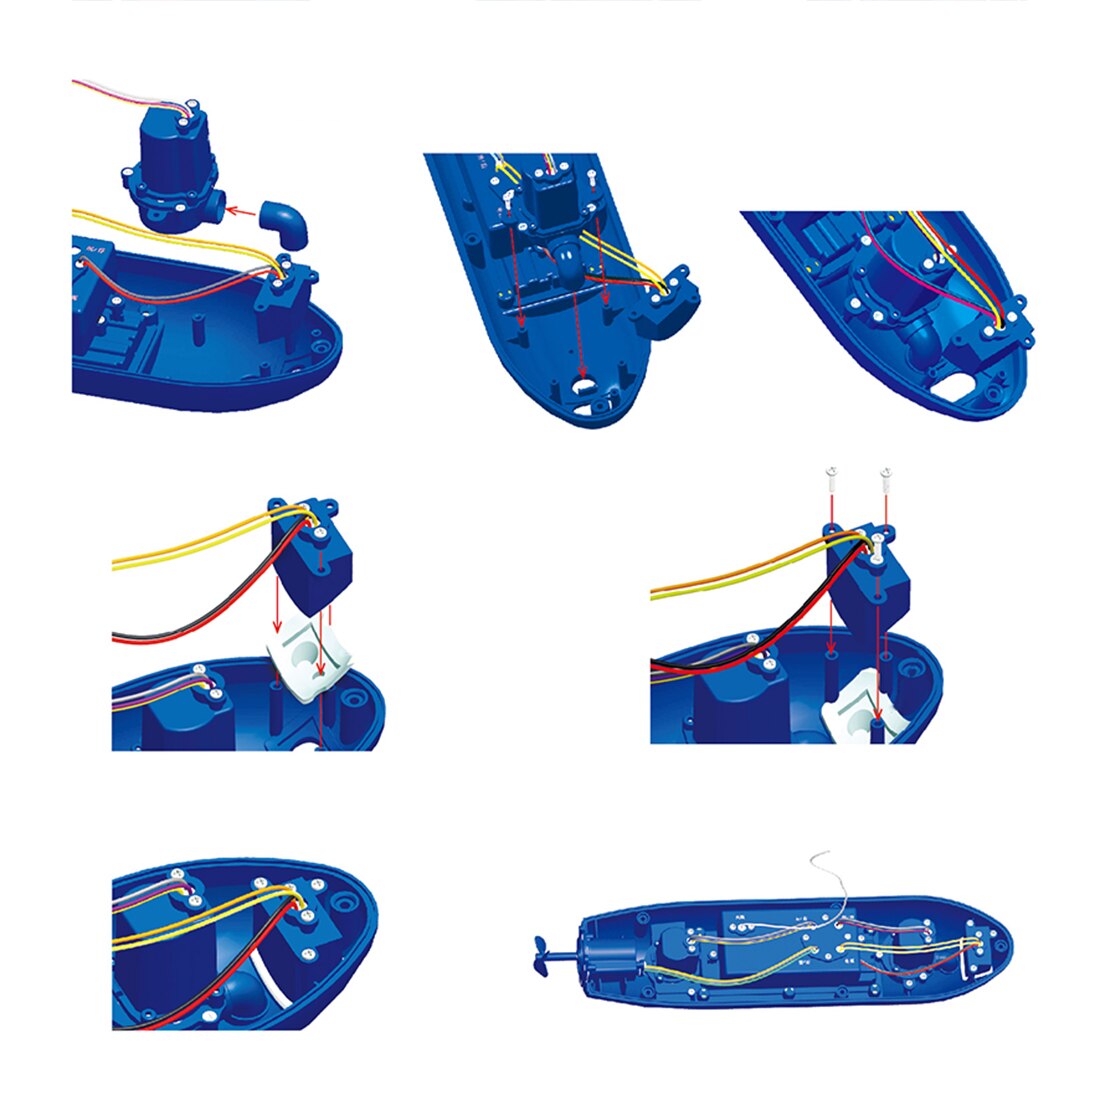 Grappige Rc Mini Submarine 6 Kanalen Afstandsbediening Onder Water Rc Boot Model Kids Educatief Stem Speelgoed Cadeau Voor kinderen